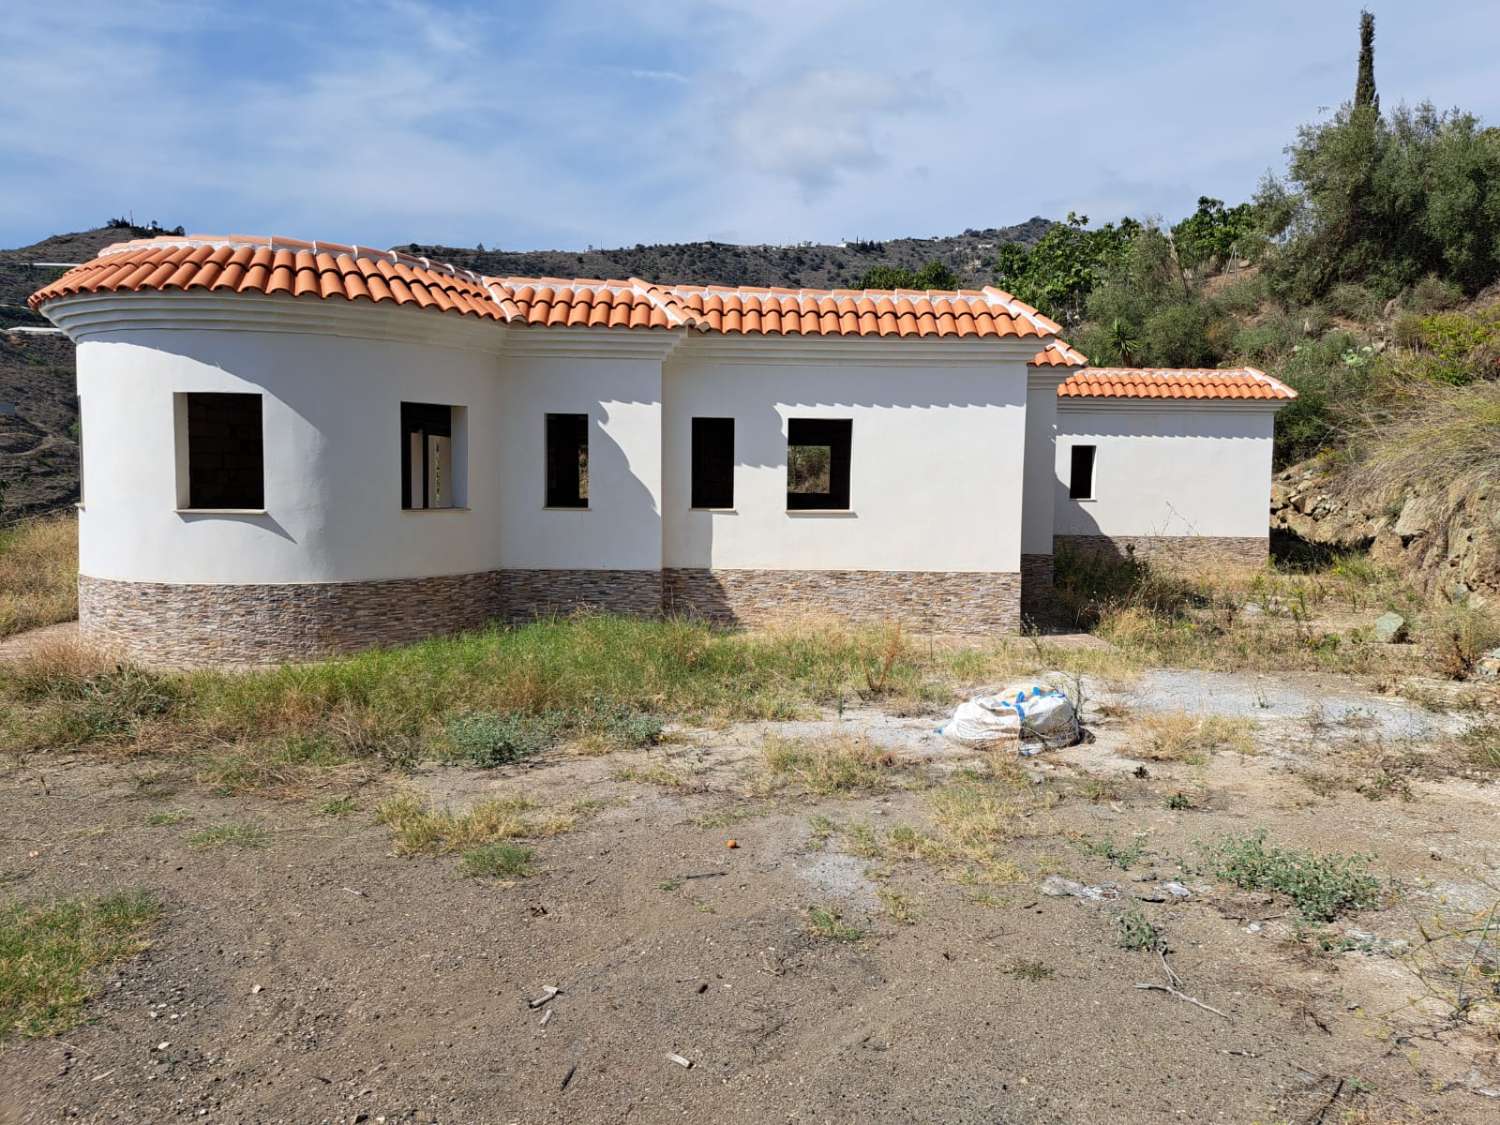 Ve výstavbě, která má být dokončena v blízkosti silnice algarrobo krásná vila